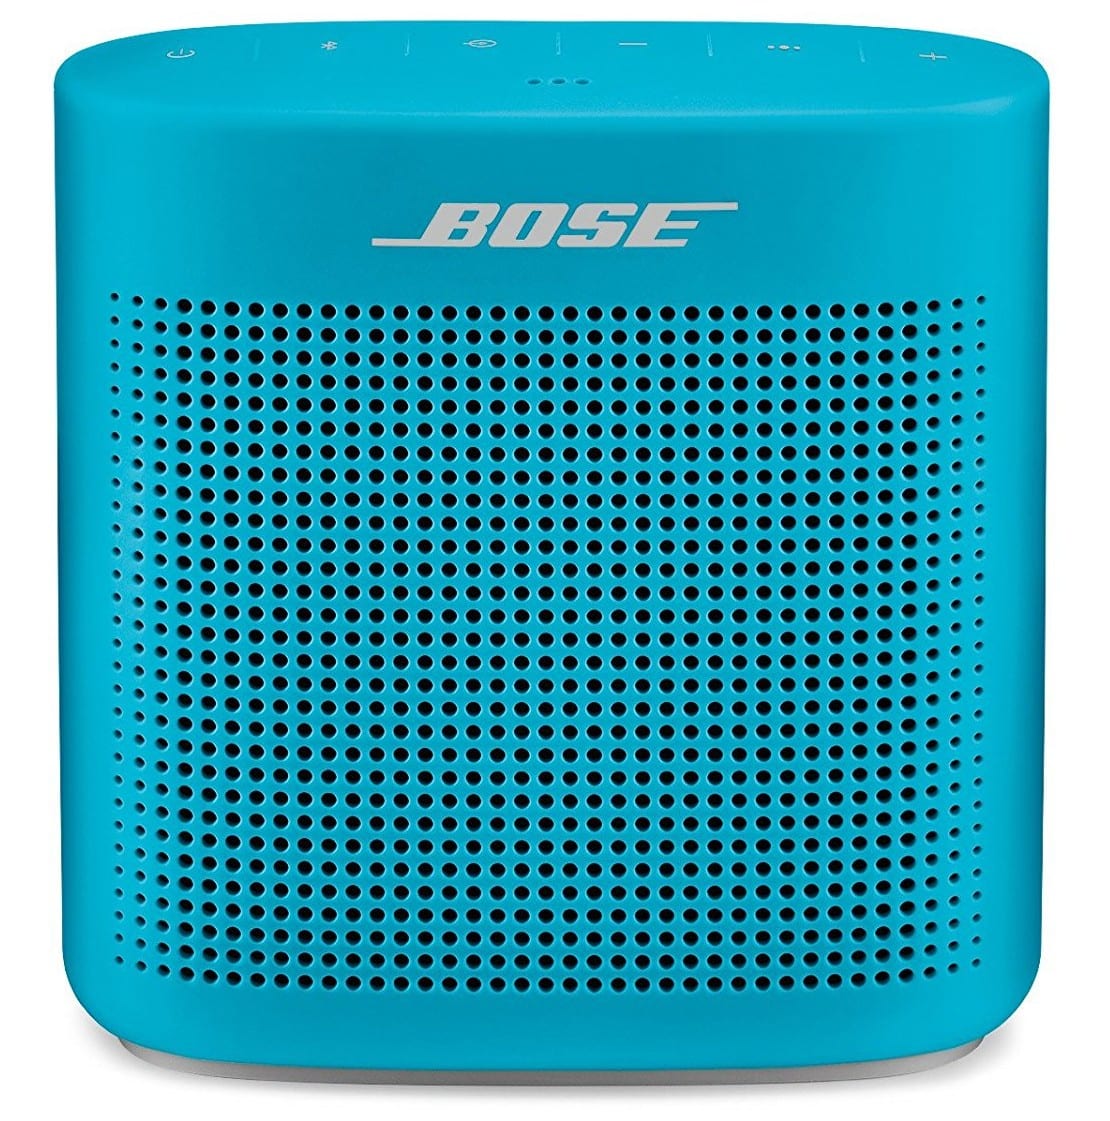 Best Wireless Speakers 2017: Blue Bose